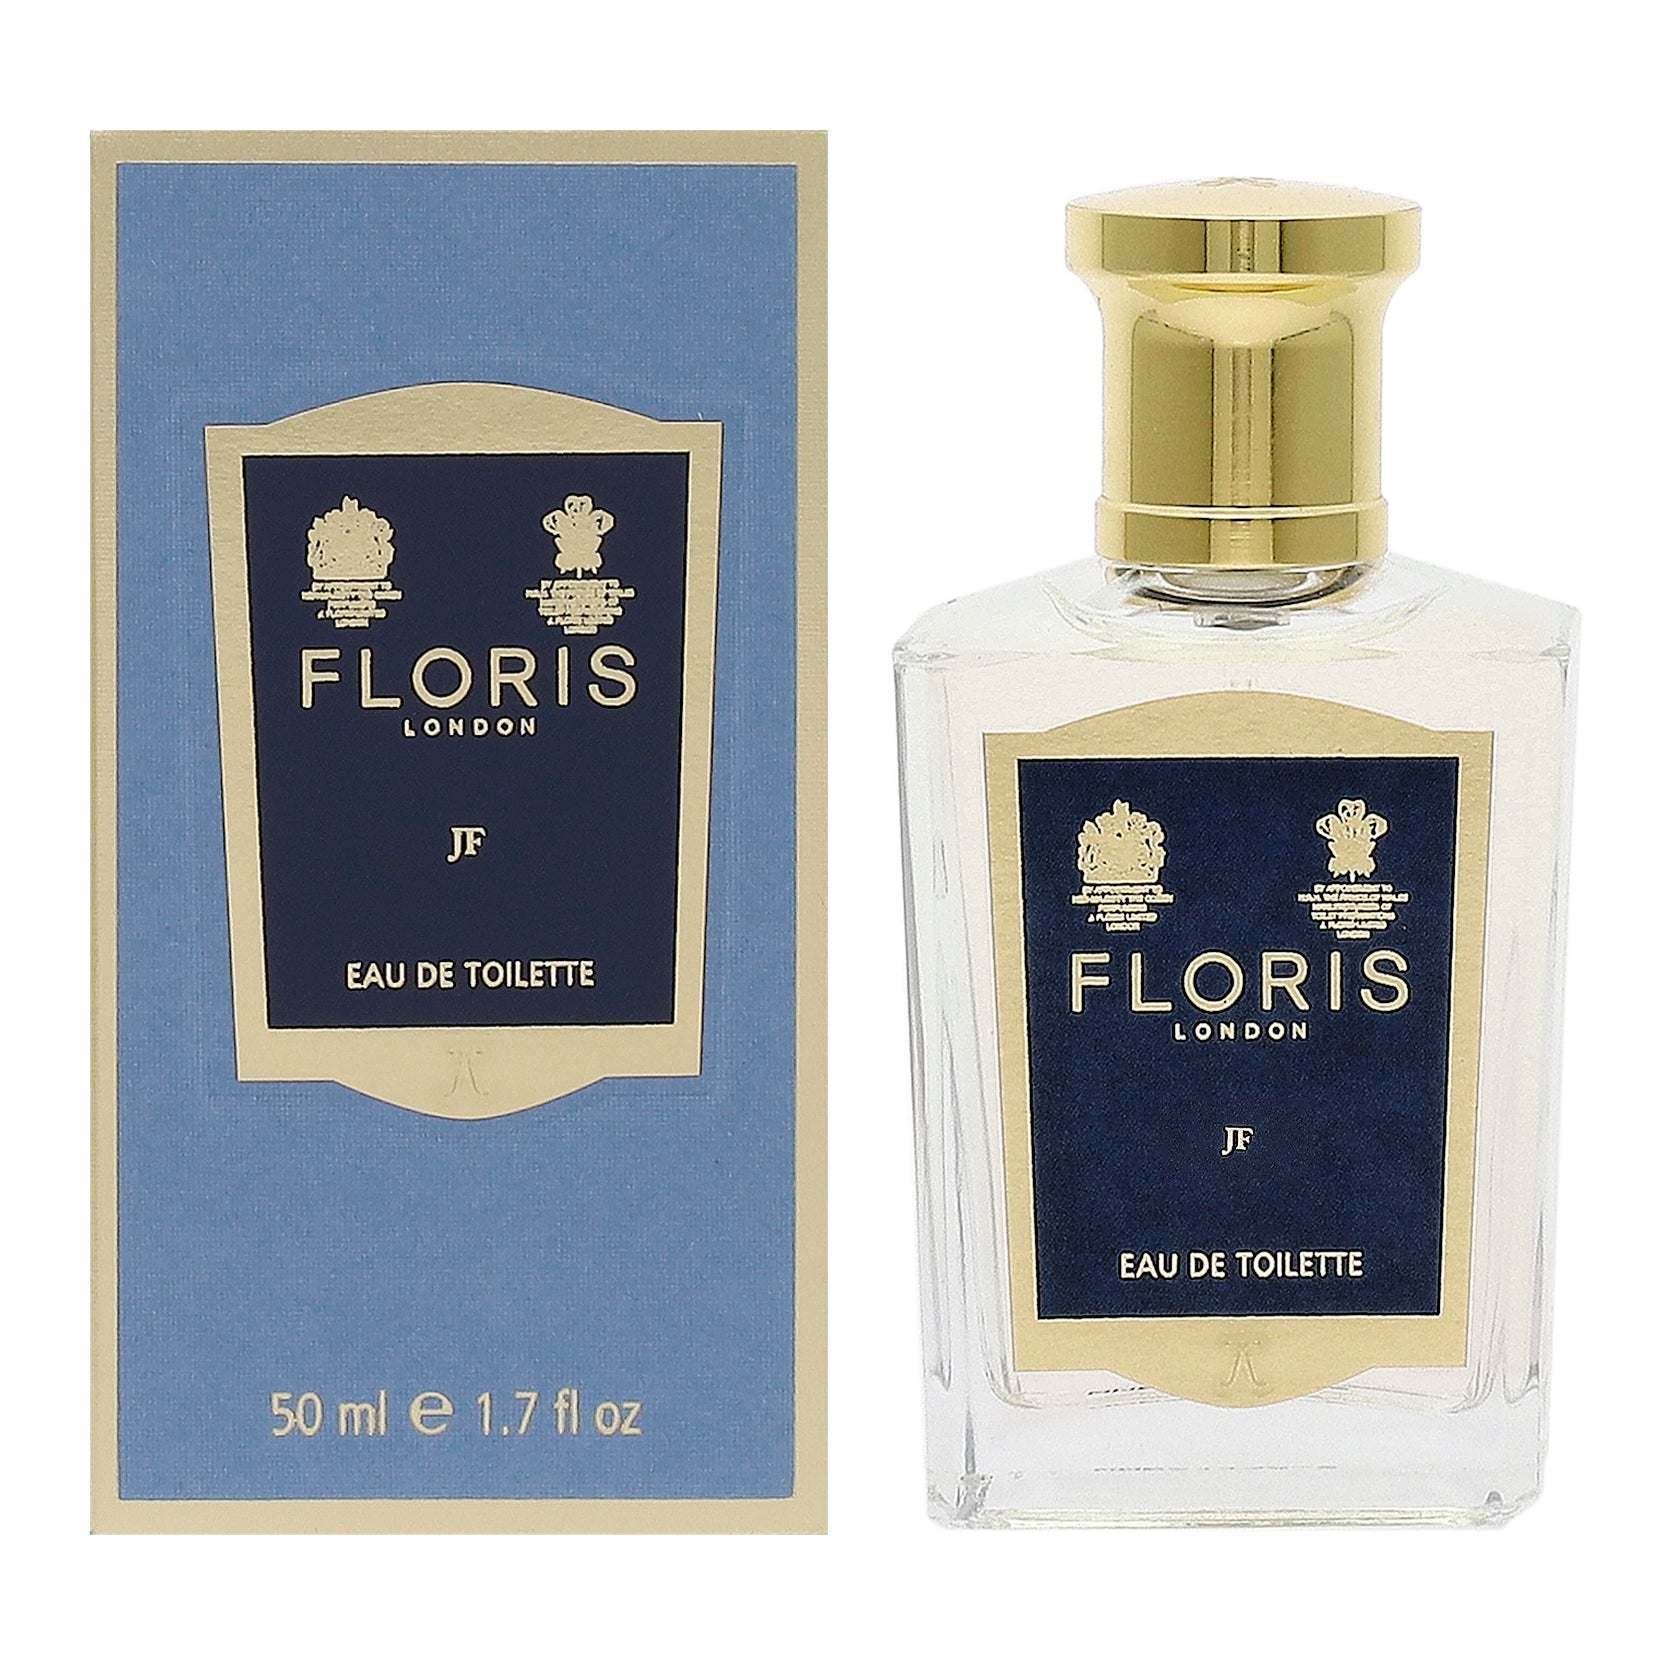 FLORIS JFオードトワレ 30ml 有名なブランド - 香水(男性用)